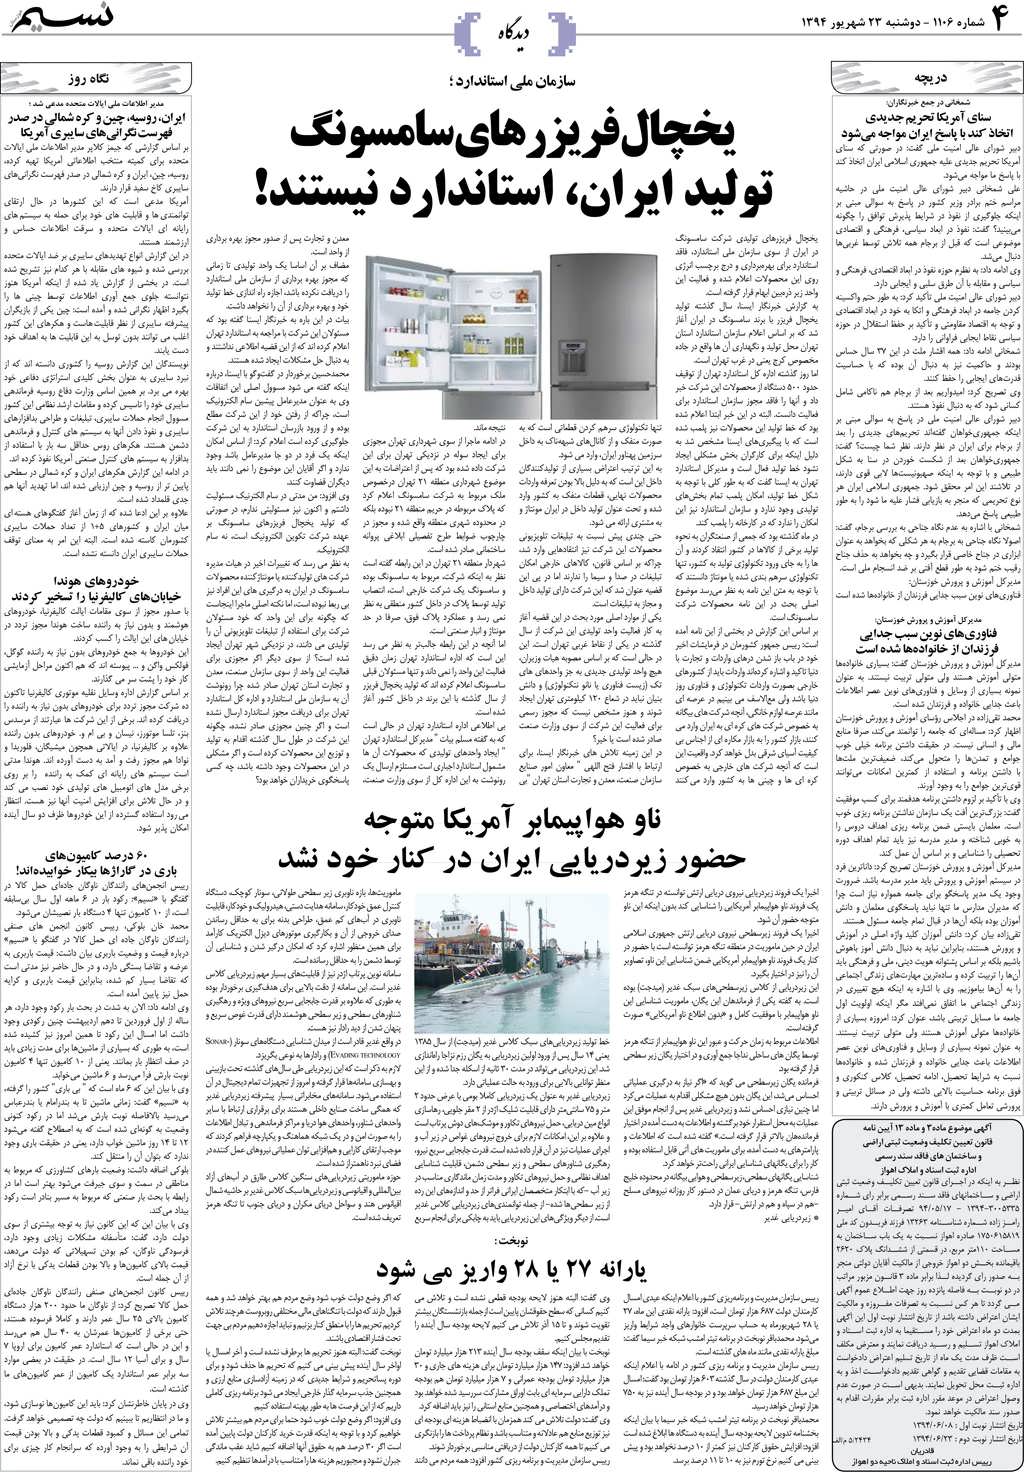 صفحه دیدگاه روزنامه نسیم شماره 1106